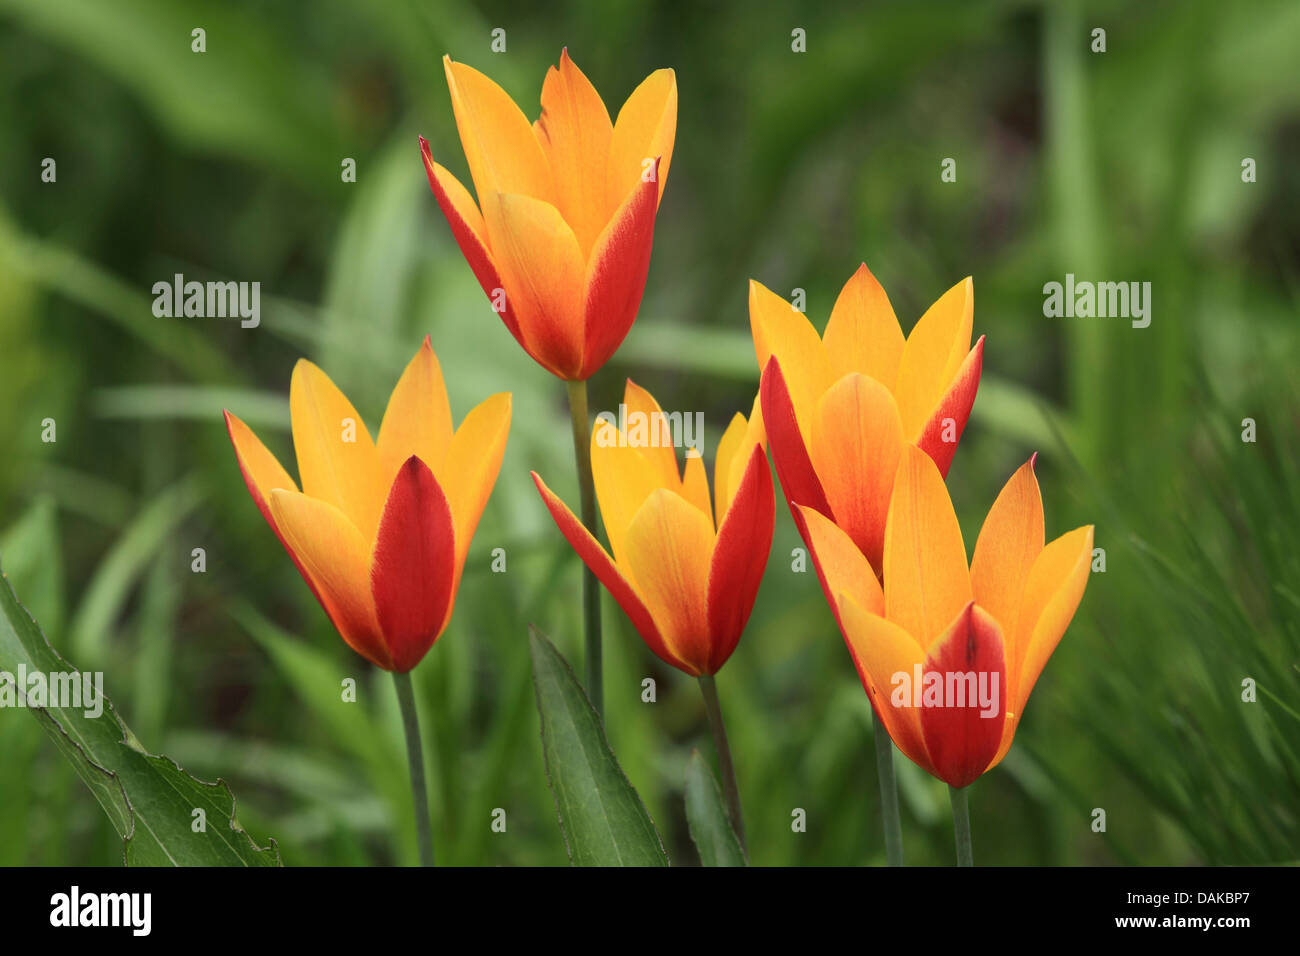 common garden tulip (Tulipa gesneriana), yellowand red tulip flowers Stock Photo